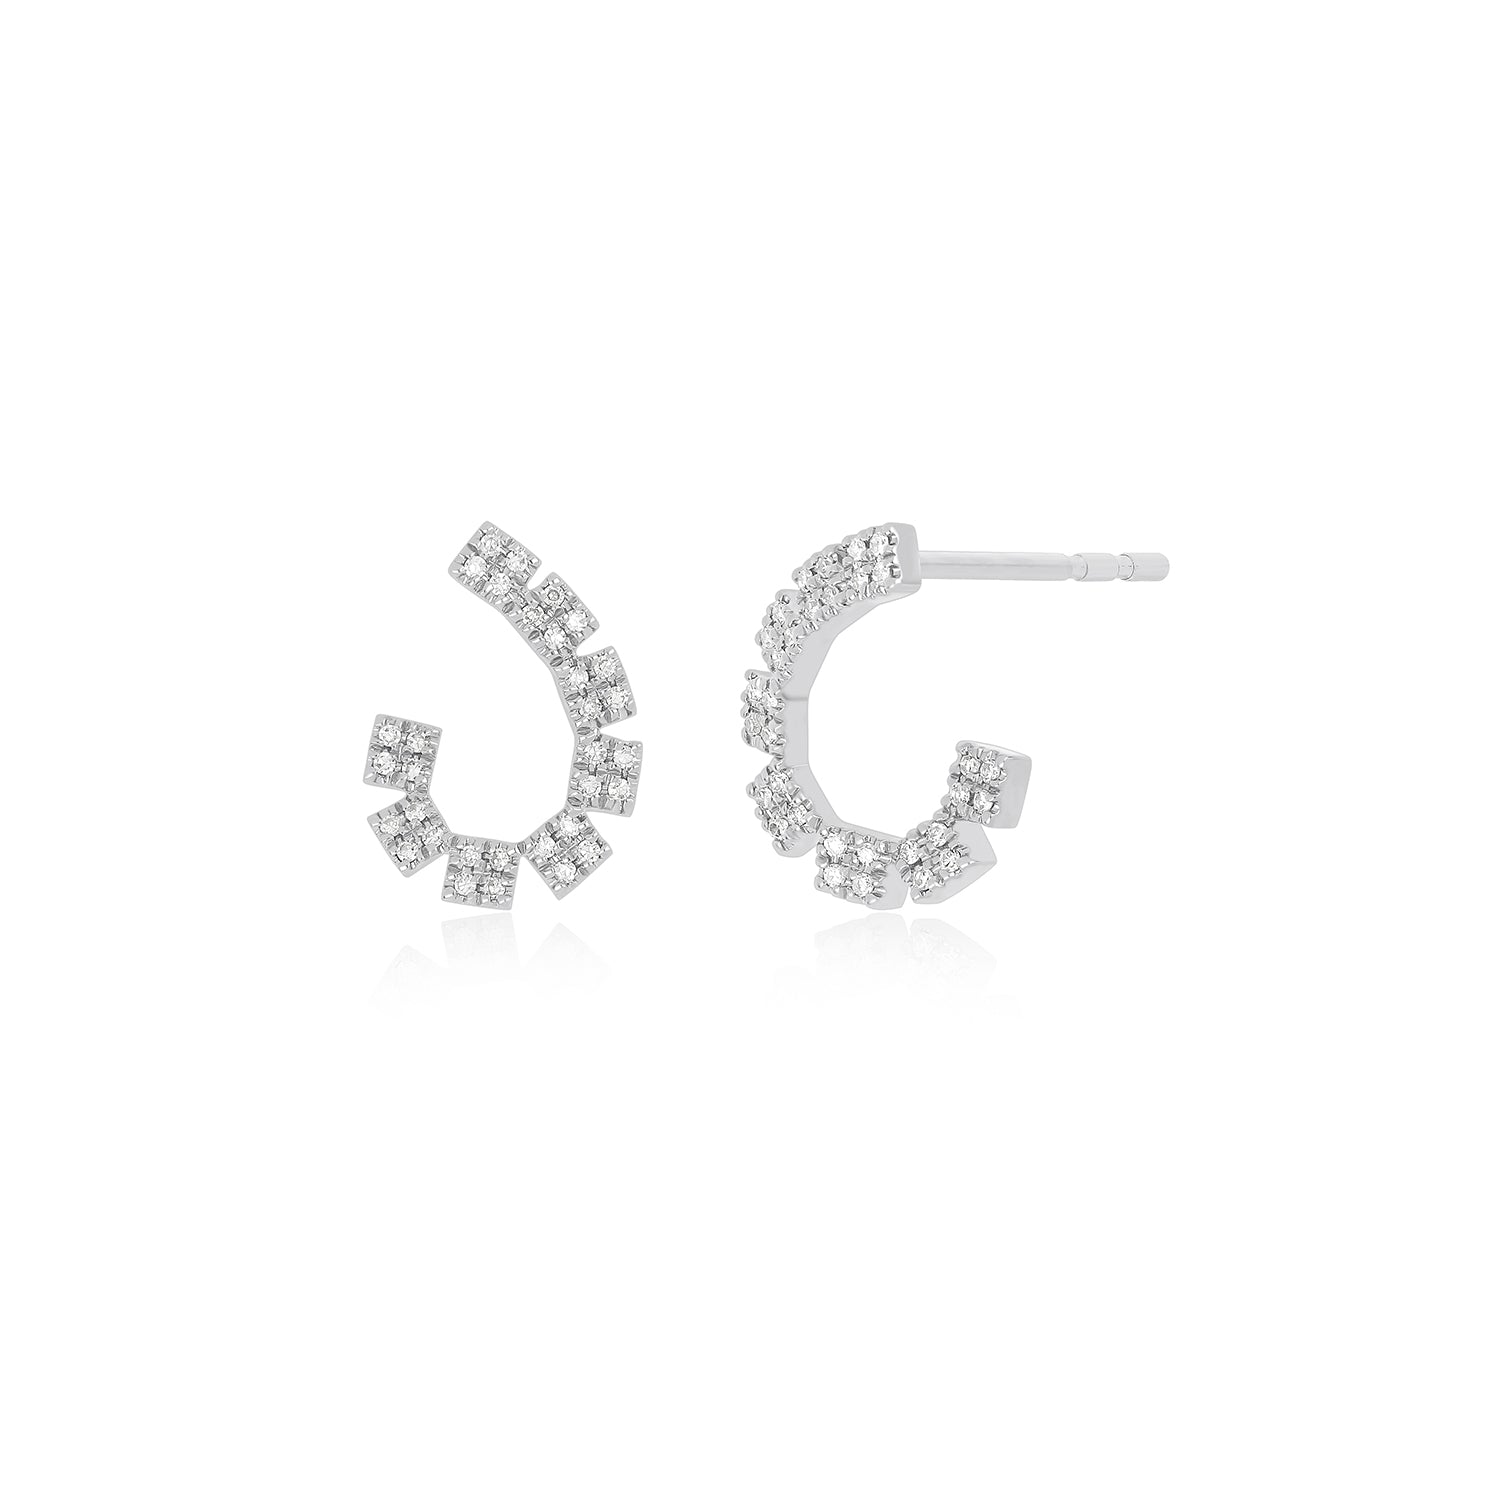 Diamond Double Row Wrap Earrings in 14k white gold